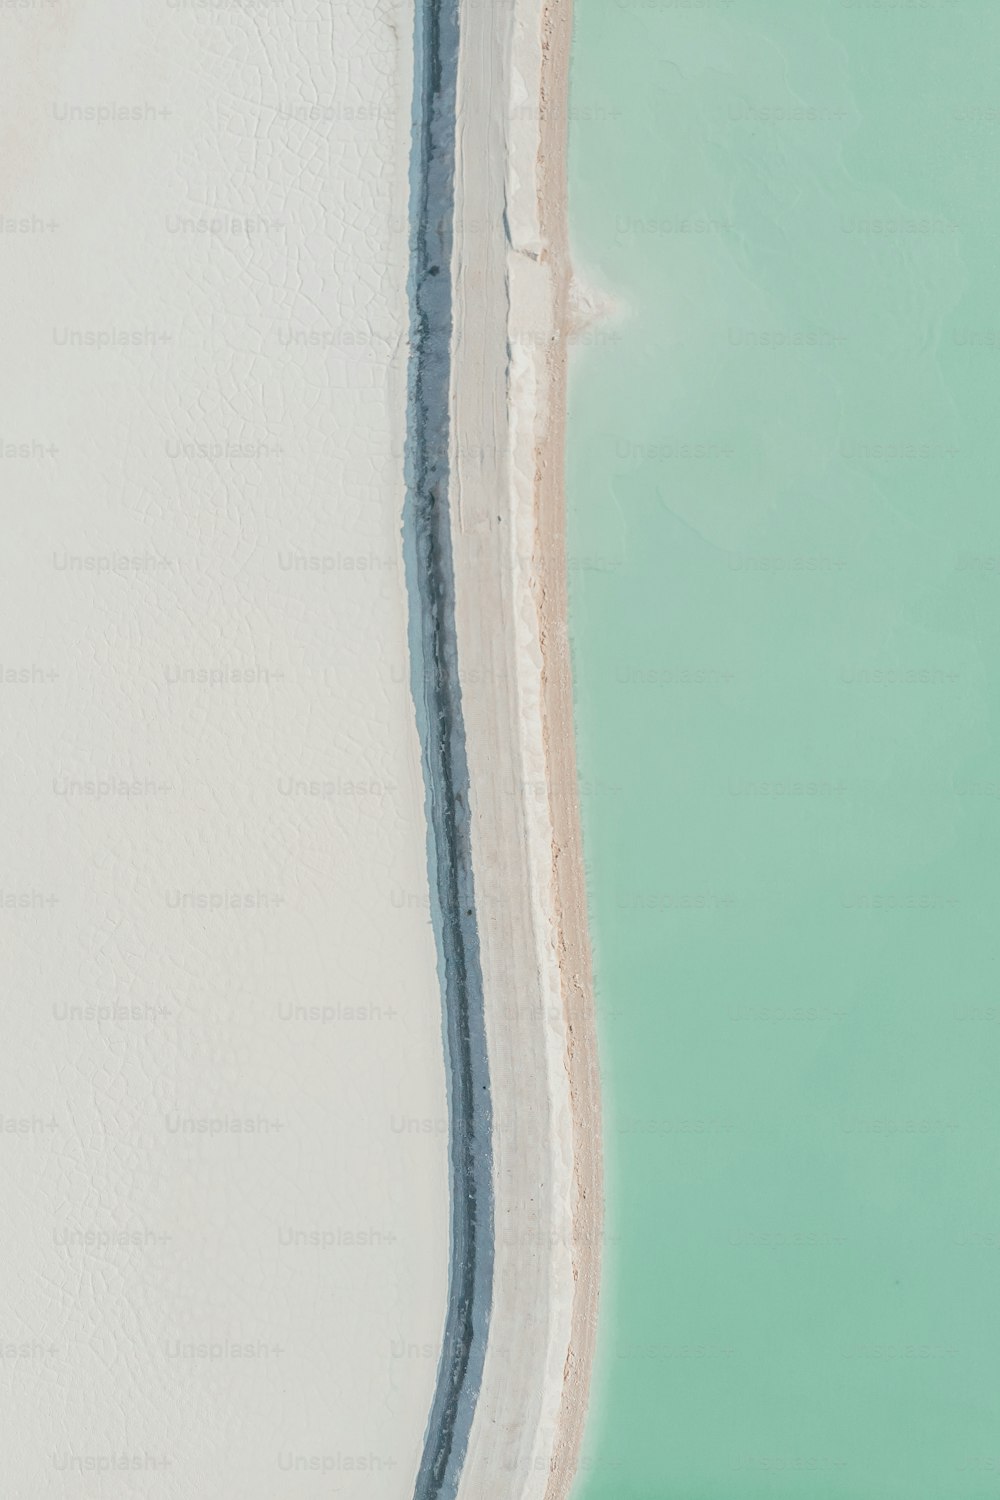 um homem montando uma prancha de surf em cima de uma praia de areia